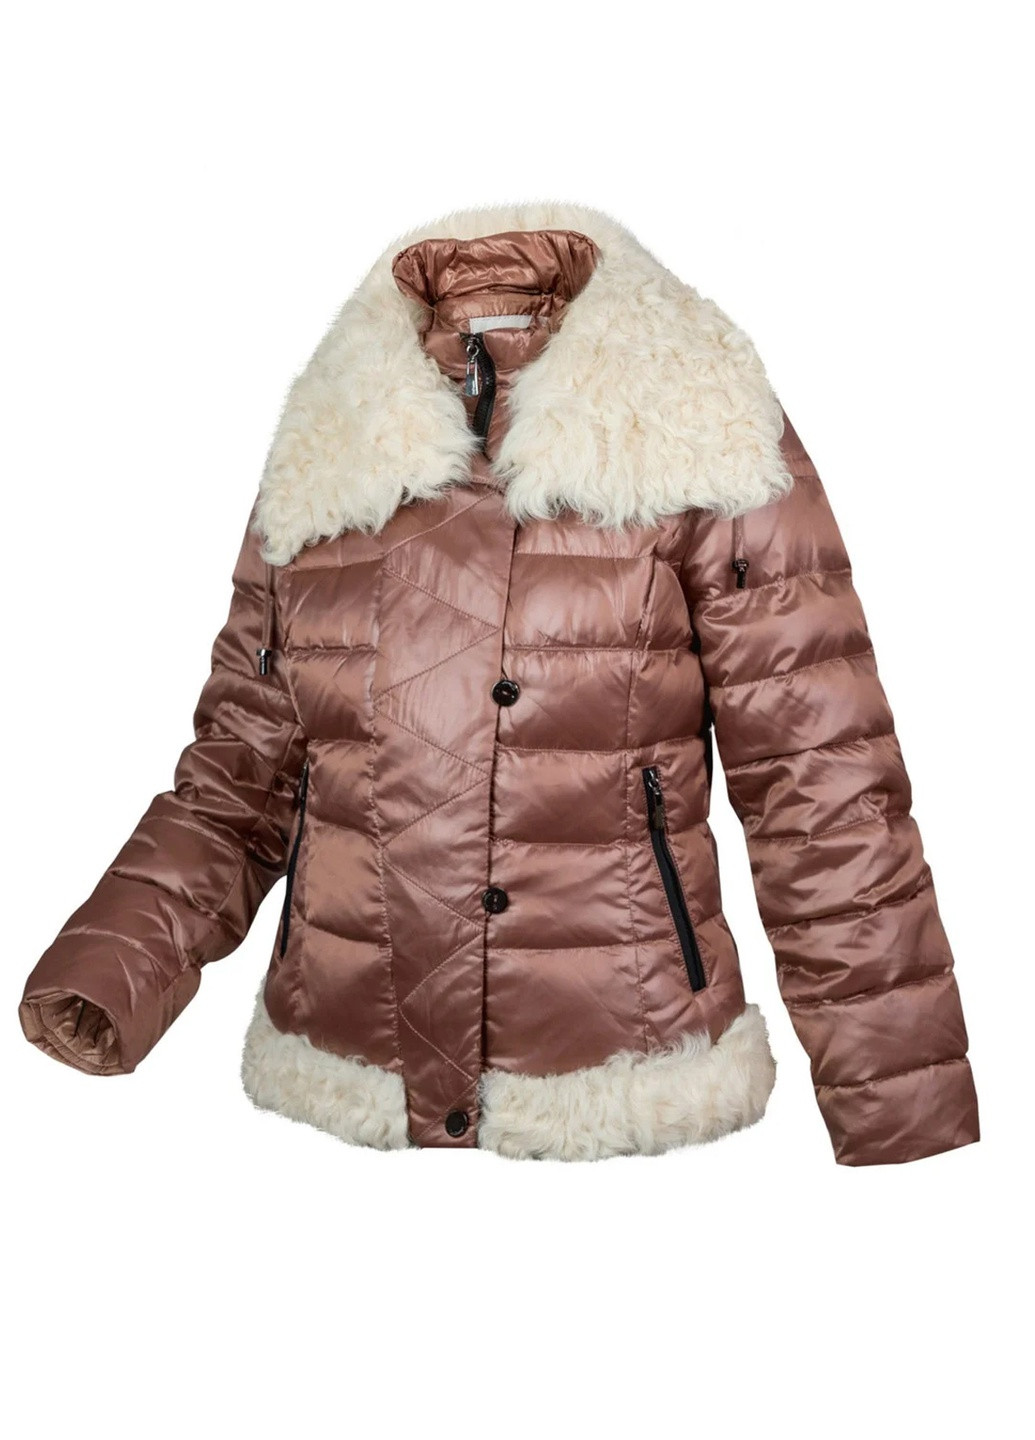 зимняя куртка пуховик на натуральном пуху с натуральным мехом калгана Mirage